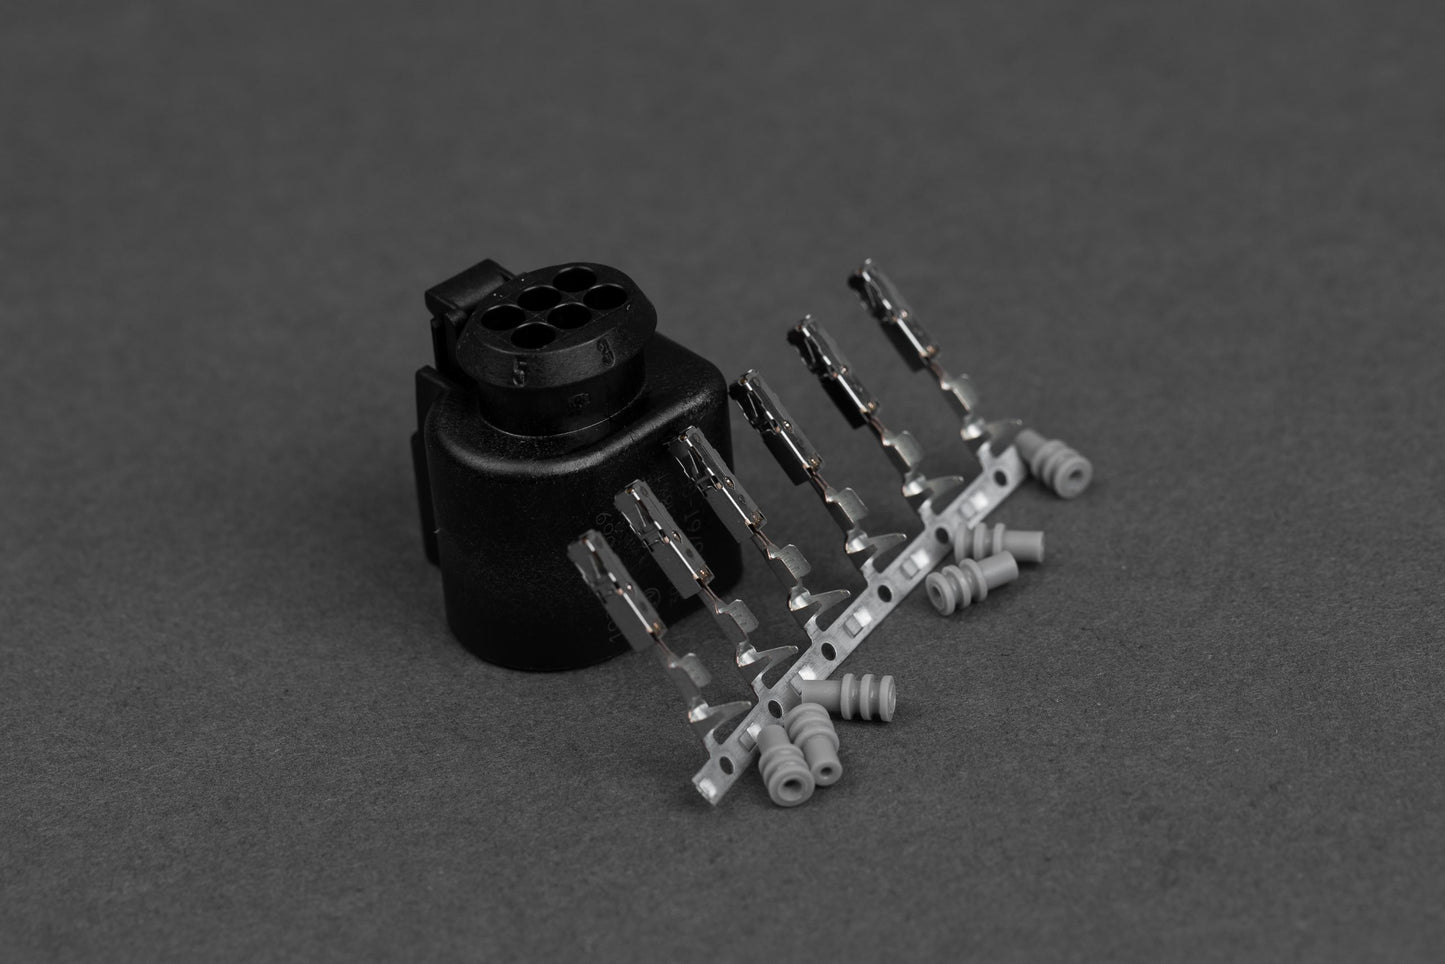 LSU 4.9 Plug and Pin Kit